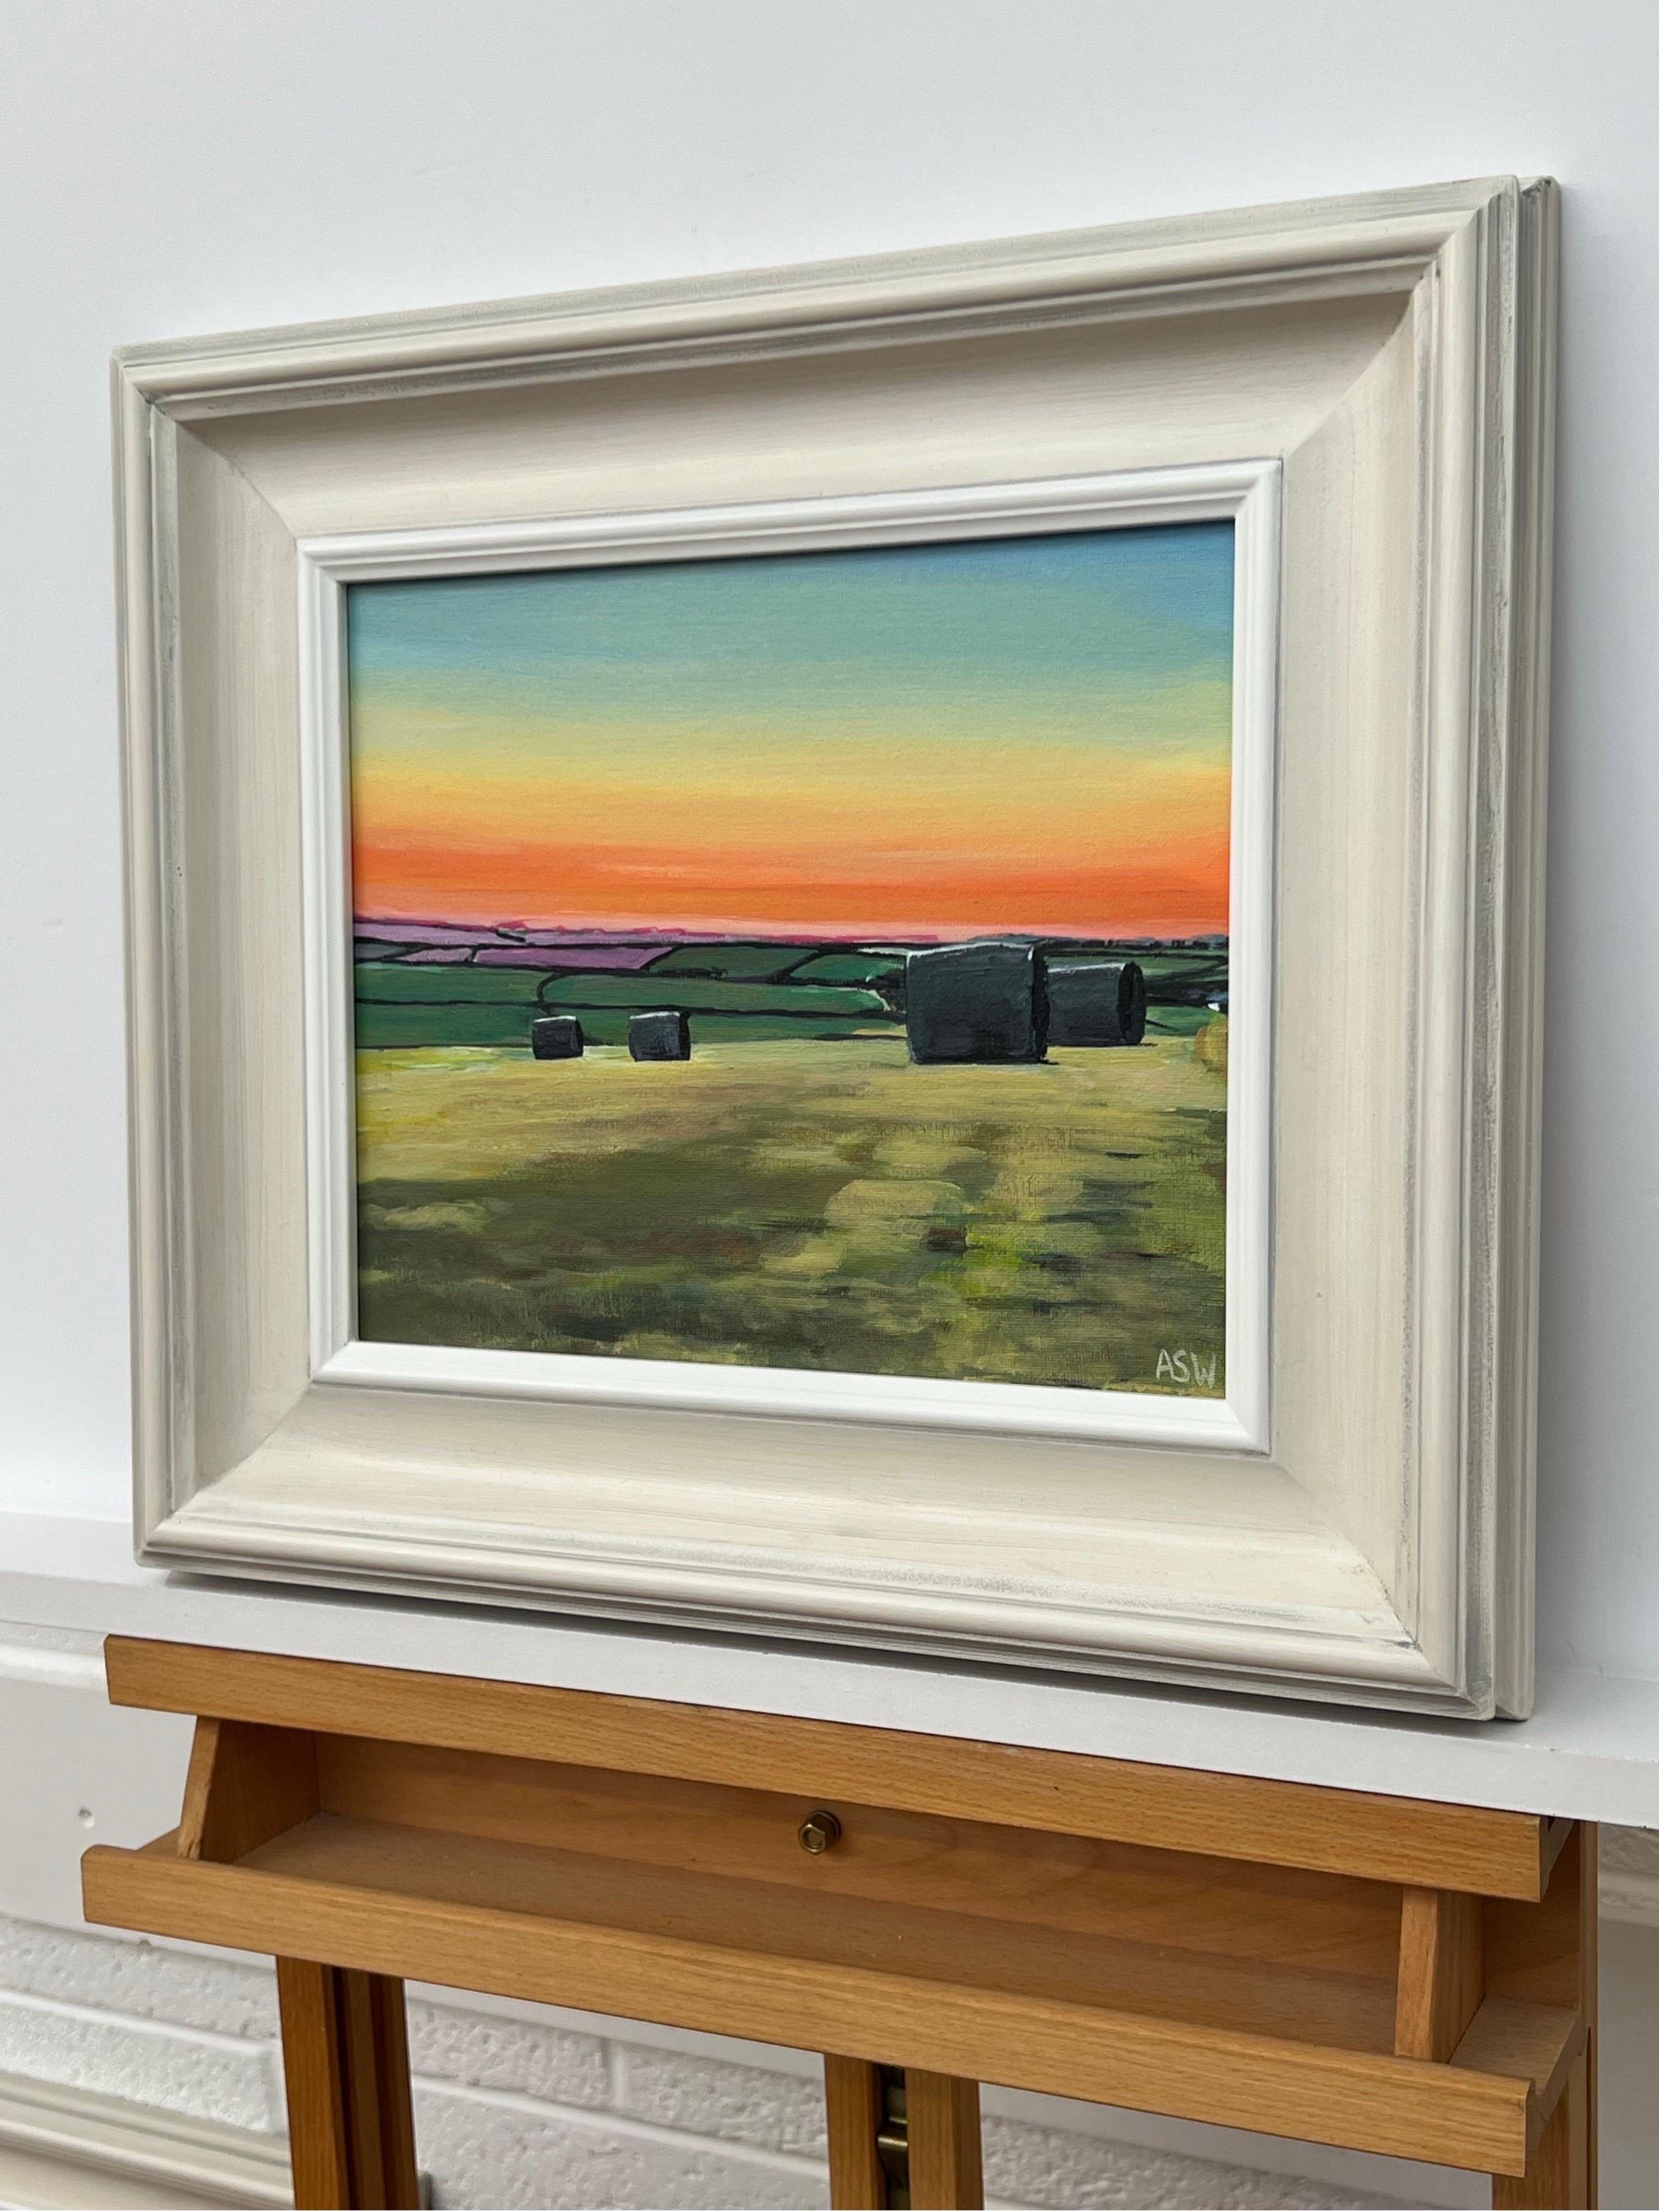 Heuballen in Devon bei Sommer-Sonnenuntergang in der englischen Landschaft von der zeitgenössischen britischen Künstlerin Angela Wakefield. Eine farbenfrohe Darstellung eines warmen, orangefarbenen Sonnenuntergangs während der